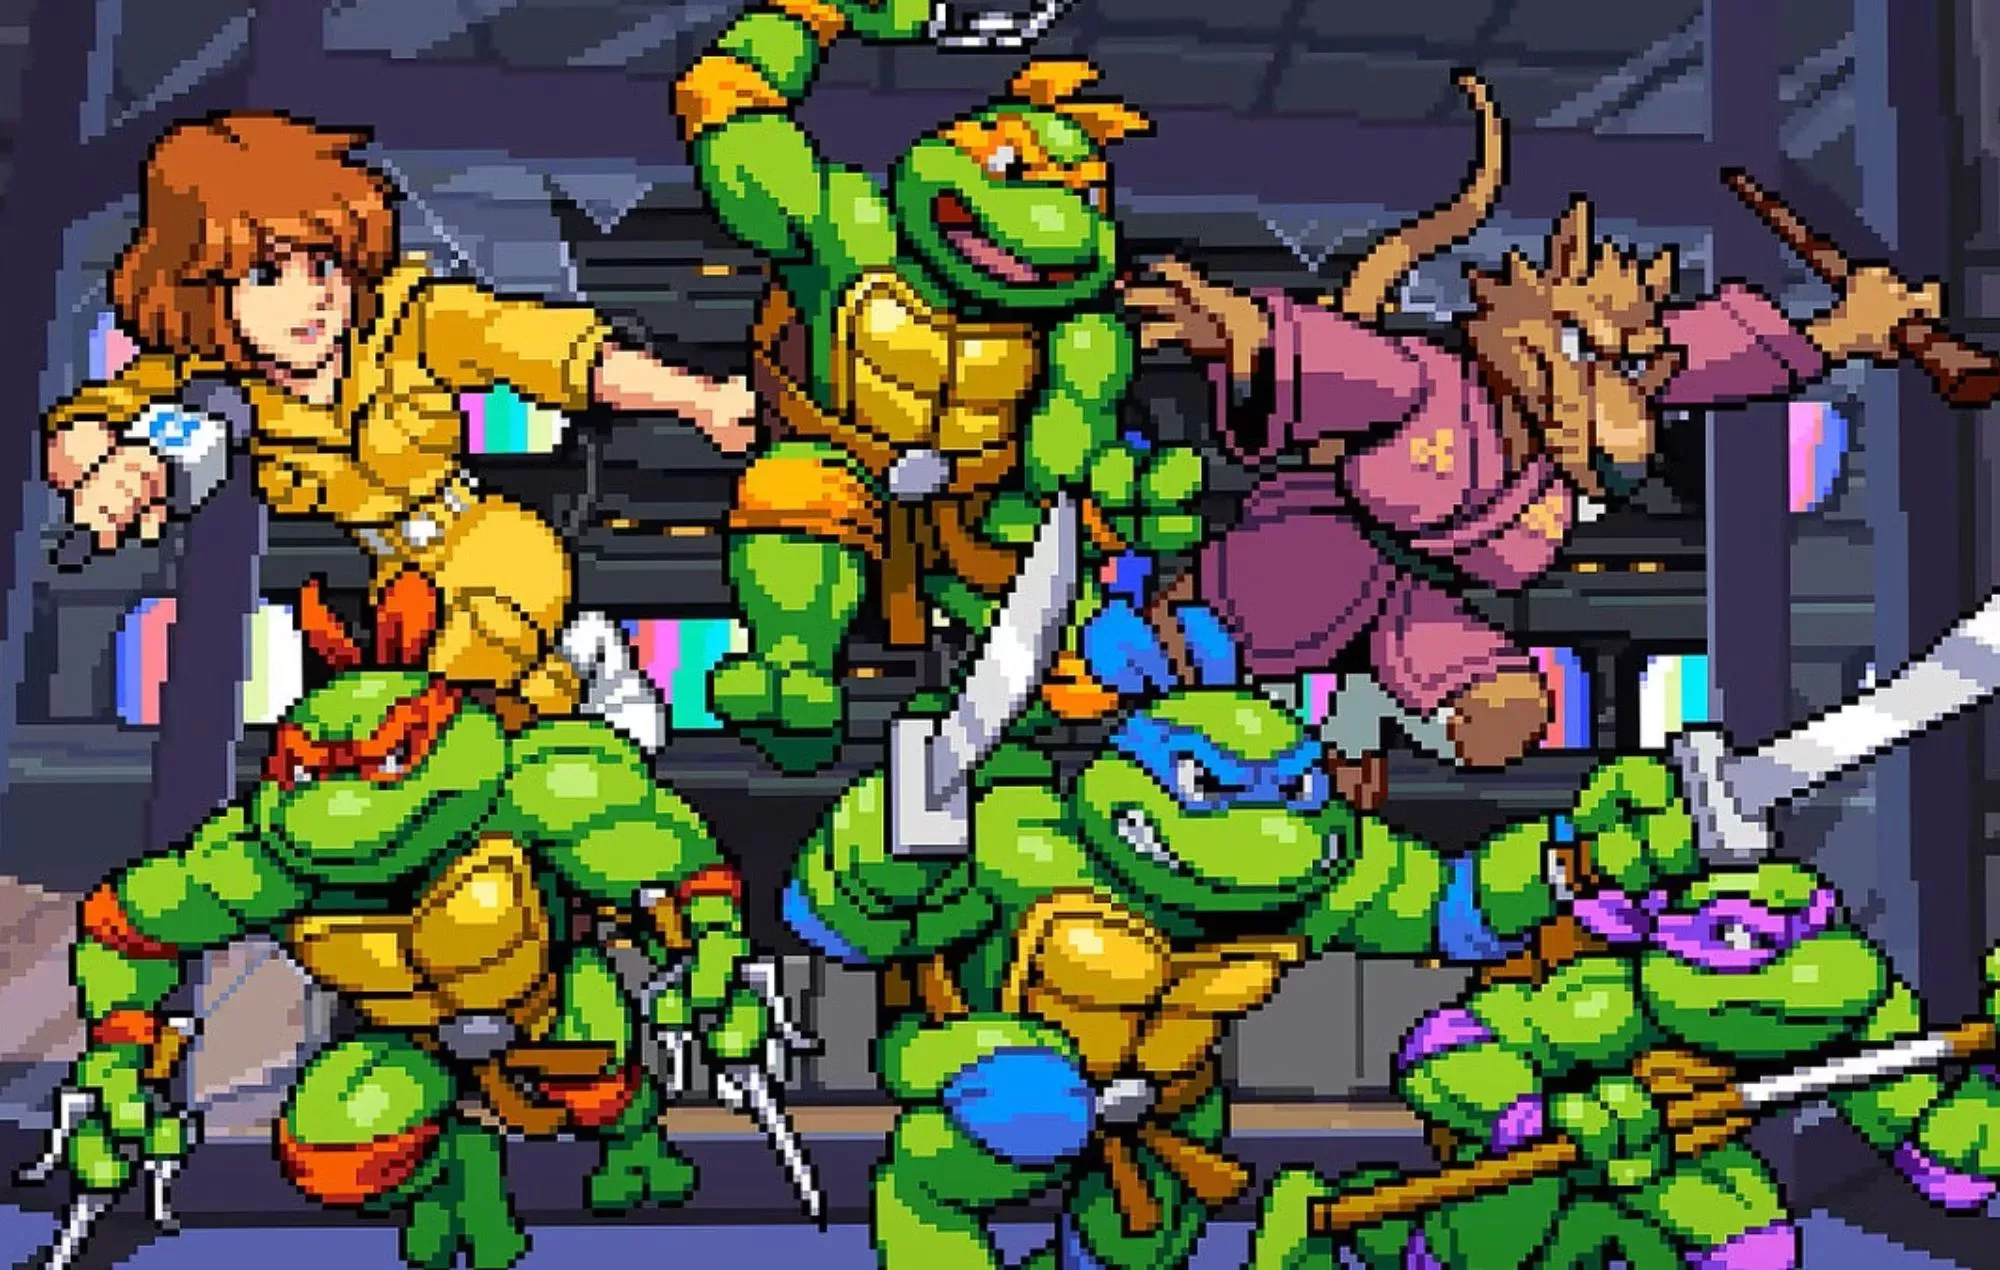 Teenage Mutant Ninja Turtles' tendrá un oscuro juego de acción al estilo God of War